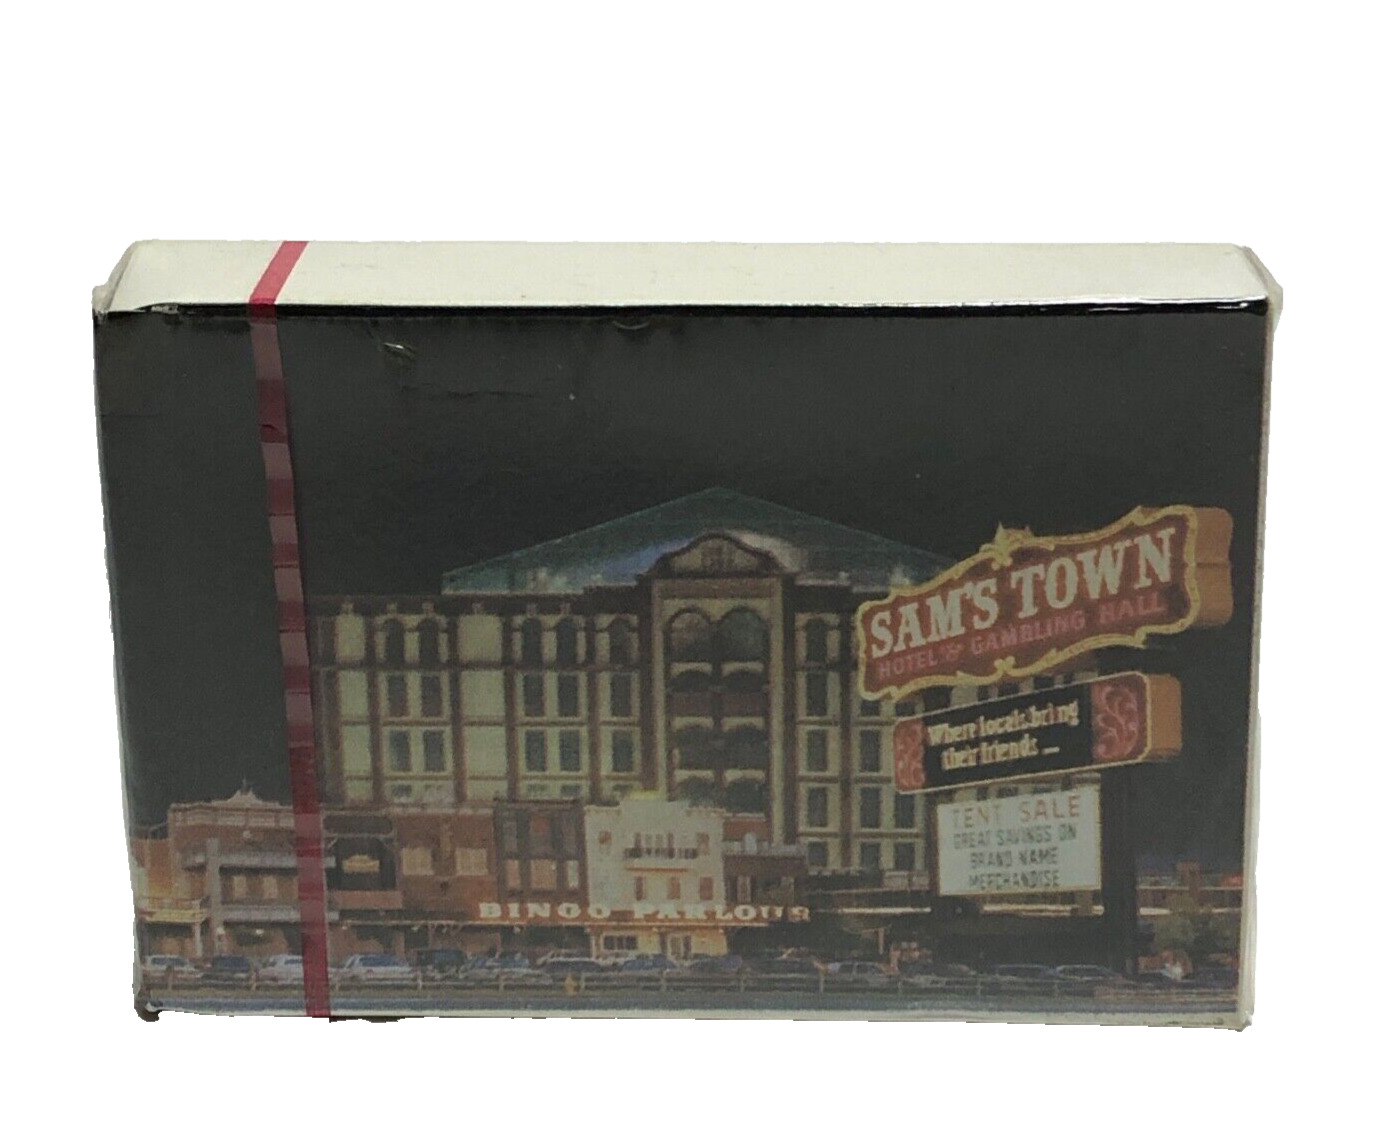 Vintage Las Vegas Strip Playing Cards, Sam\'s Town Hotel & Gambling Hall, Bingo